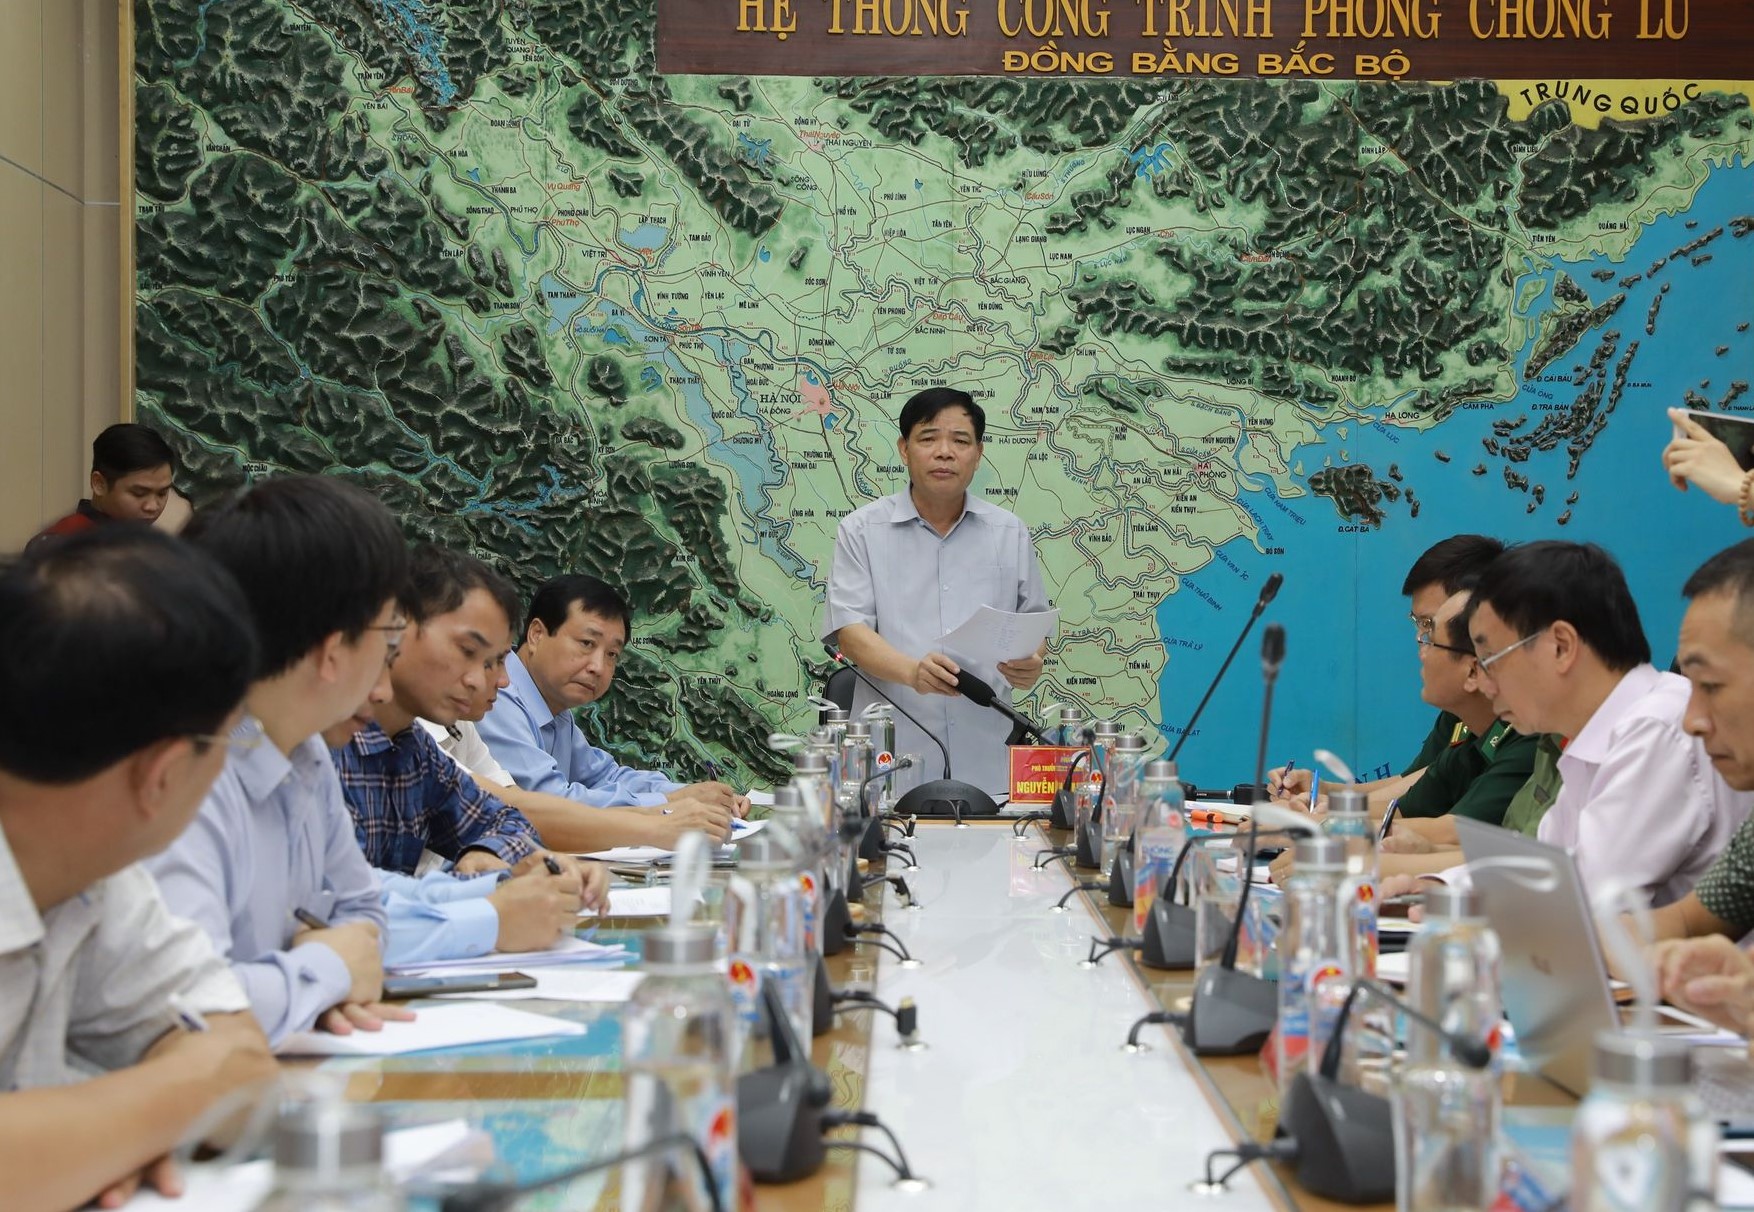 Bộ trưởng Bộ NN&PTNT Nguyễn Xuân Cường chỉ đạo tại cuộc họp - Ảnh: VGP/Đỗ Hương